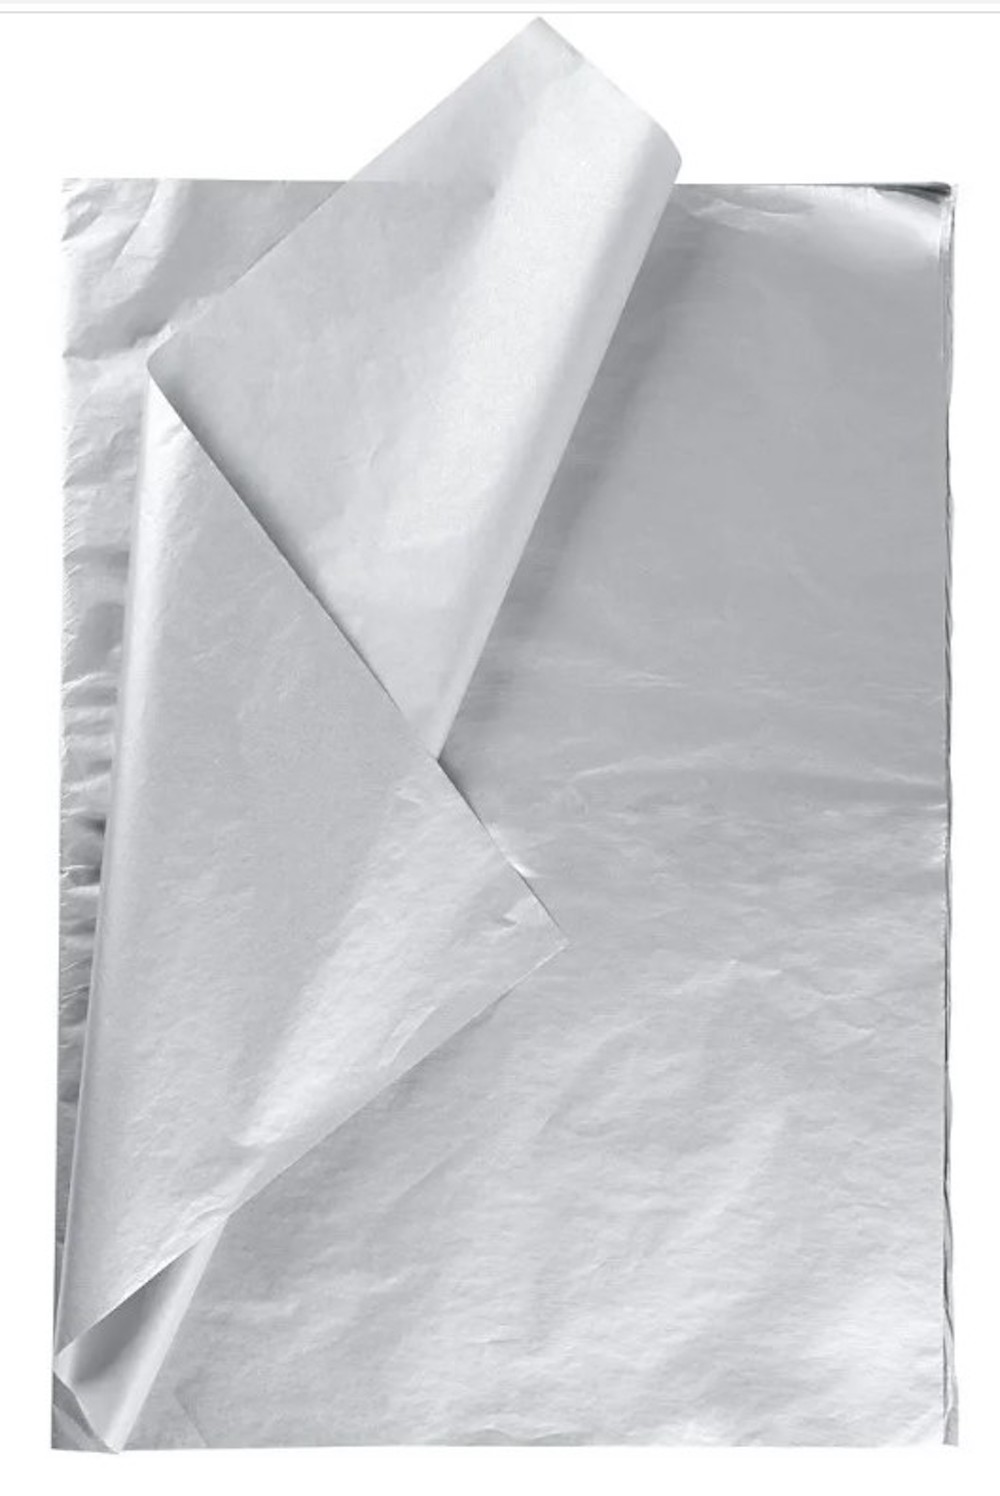 Seidenpapier, 50x70 cm, 17 g, 25 Bl./ 1 Pck.